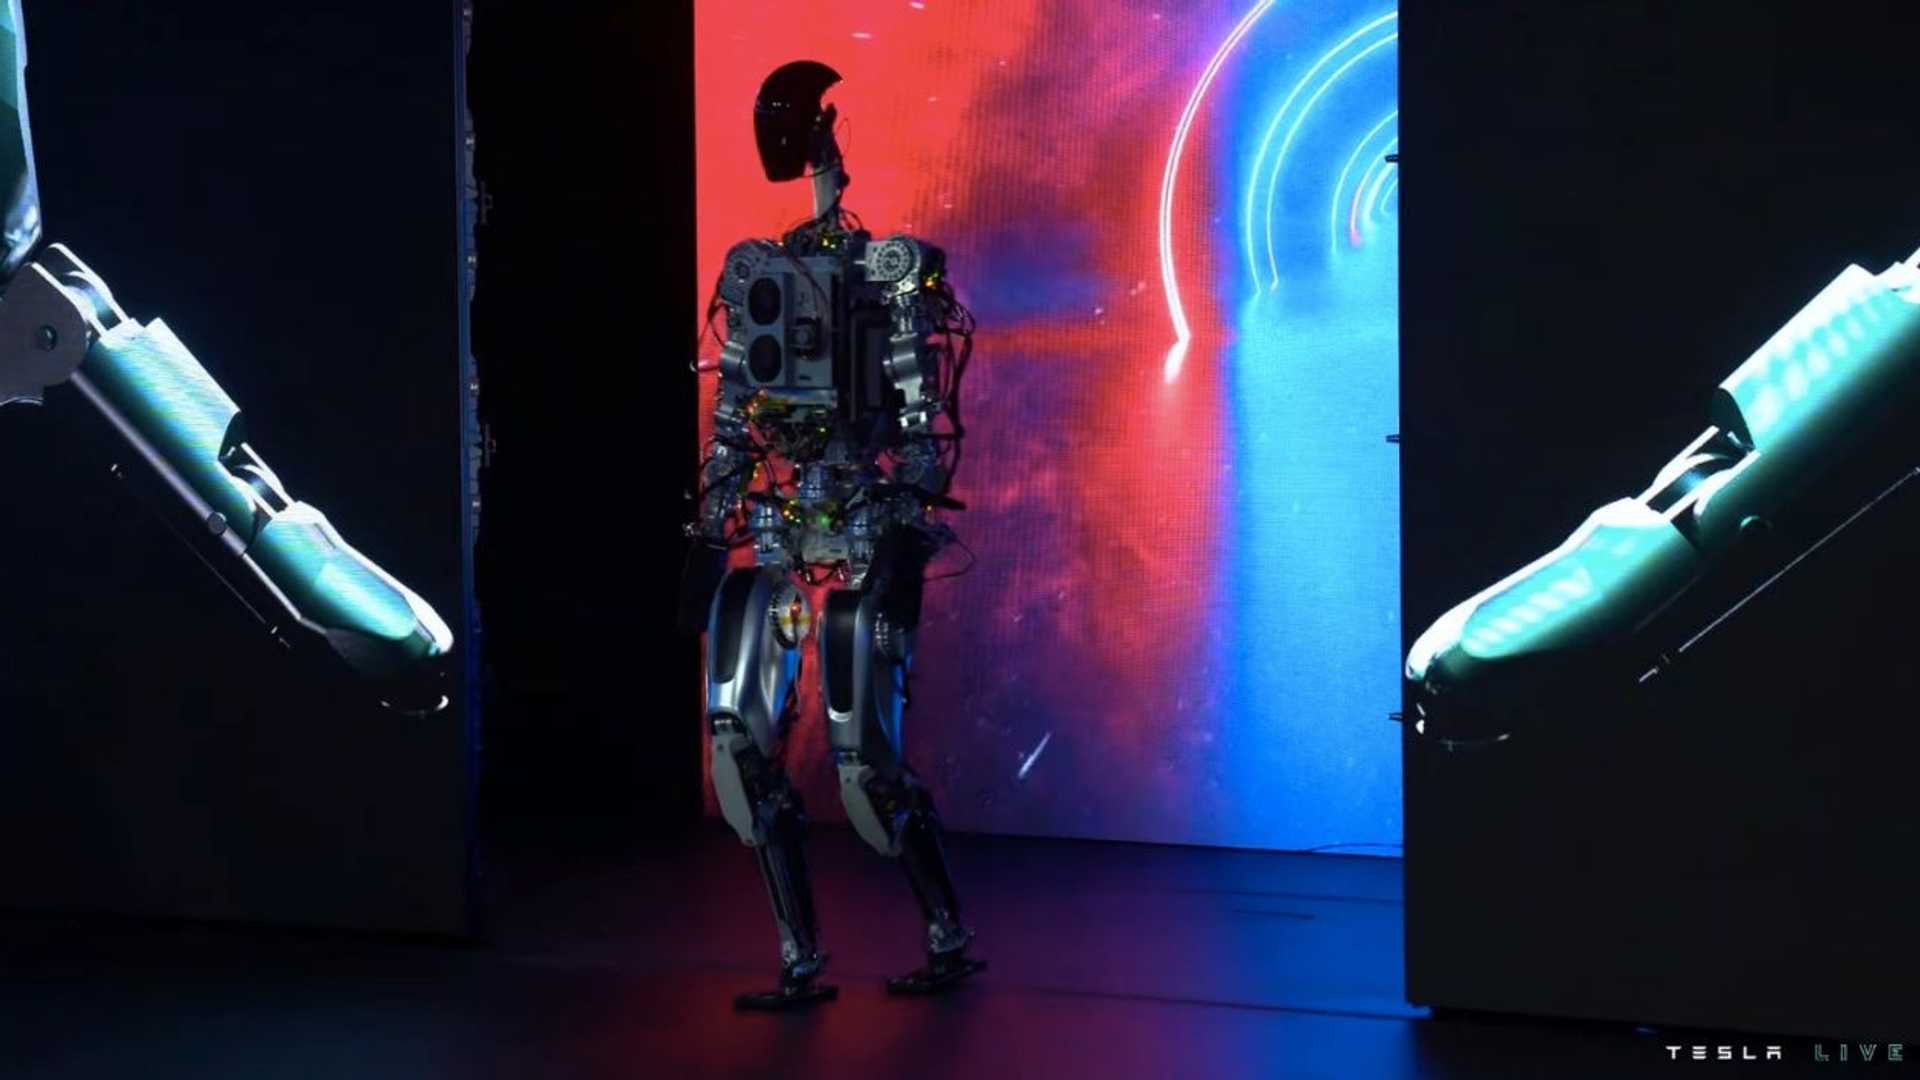 4-ربات انسان نمای تسلا با قیمت حدود ۲۰ هزار دلار رونمایی شد